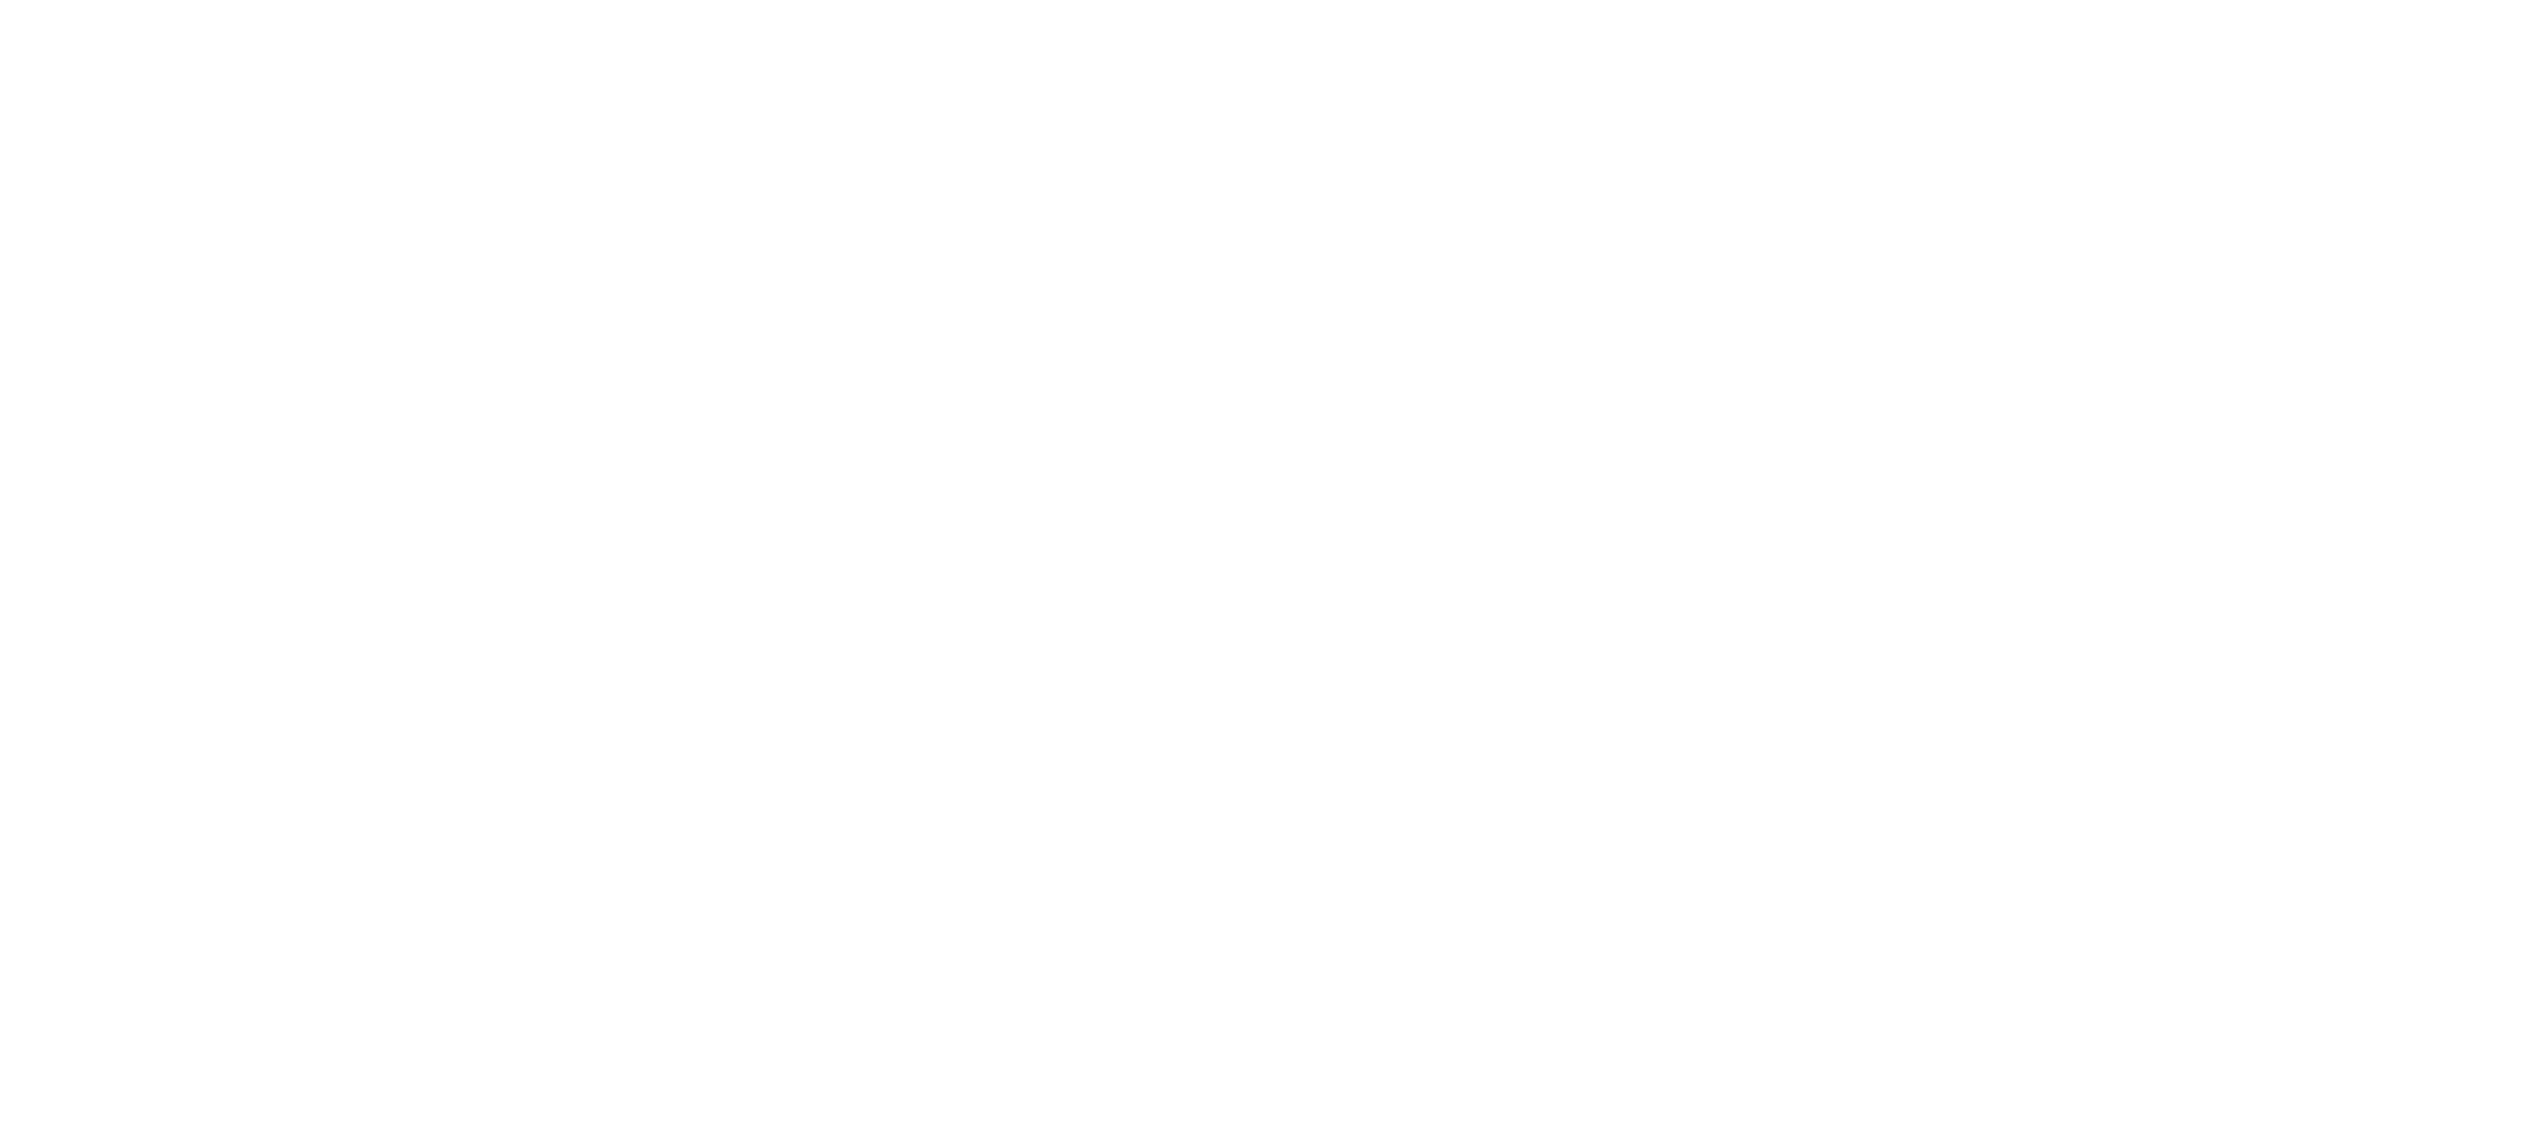 Door of Future